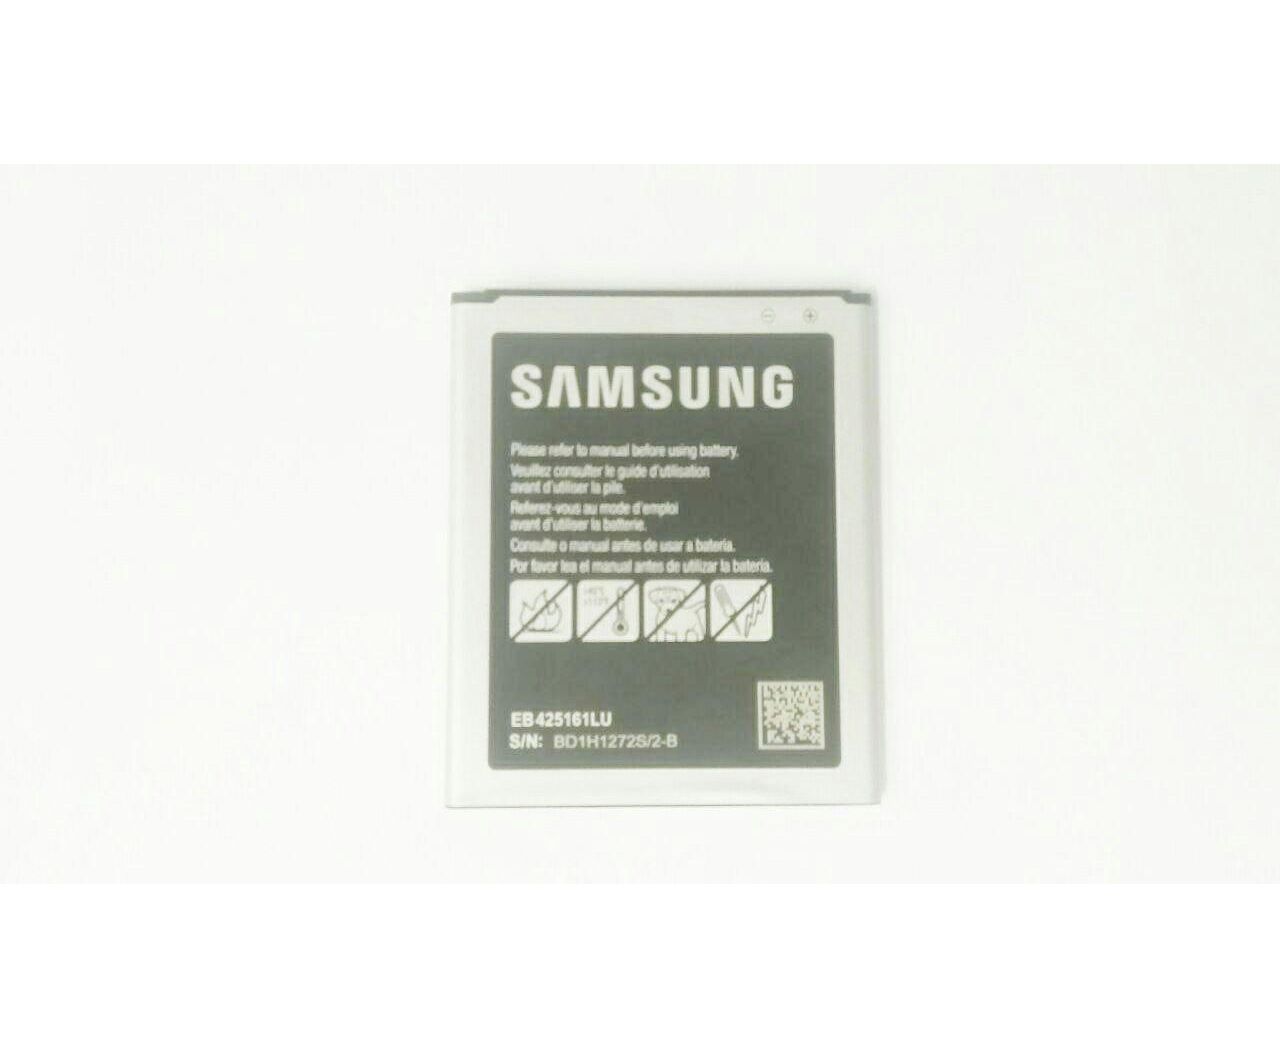 Samsung galaxy mini j105h. Аккумулятор Samsung eb425161. Eb425161lu аккумулятор. Samsung j1 Mini аккумулятор. Самсунг галакси j1 Mini аккумулятор.